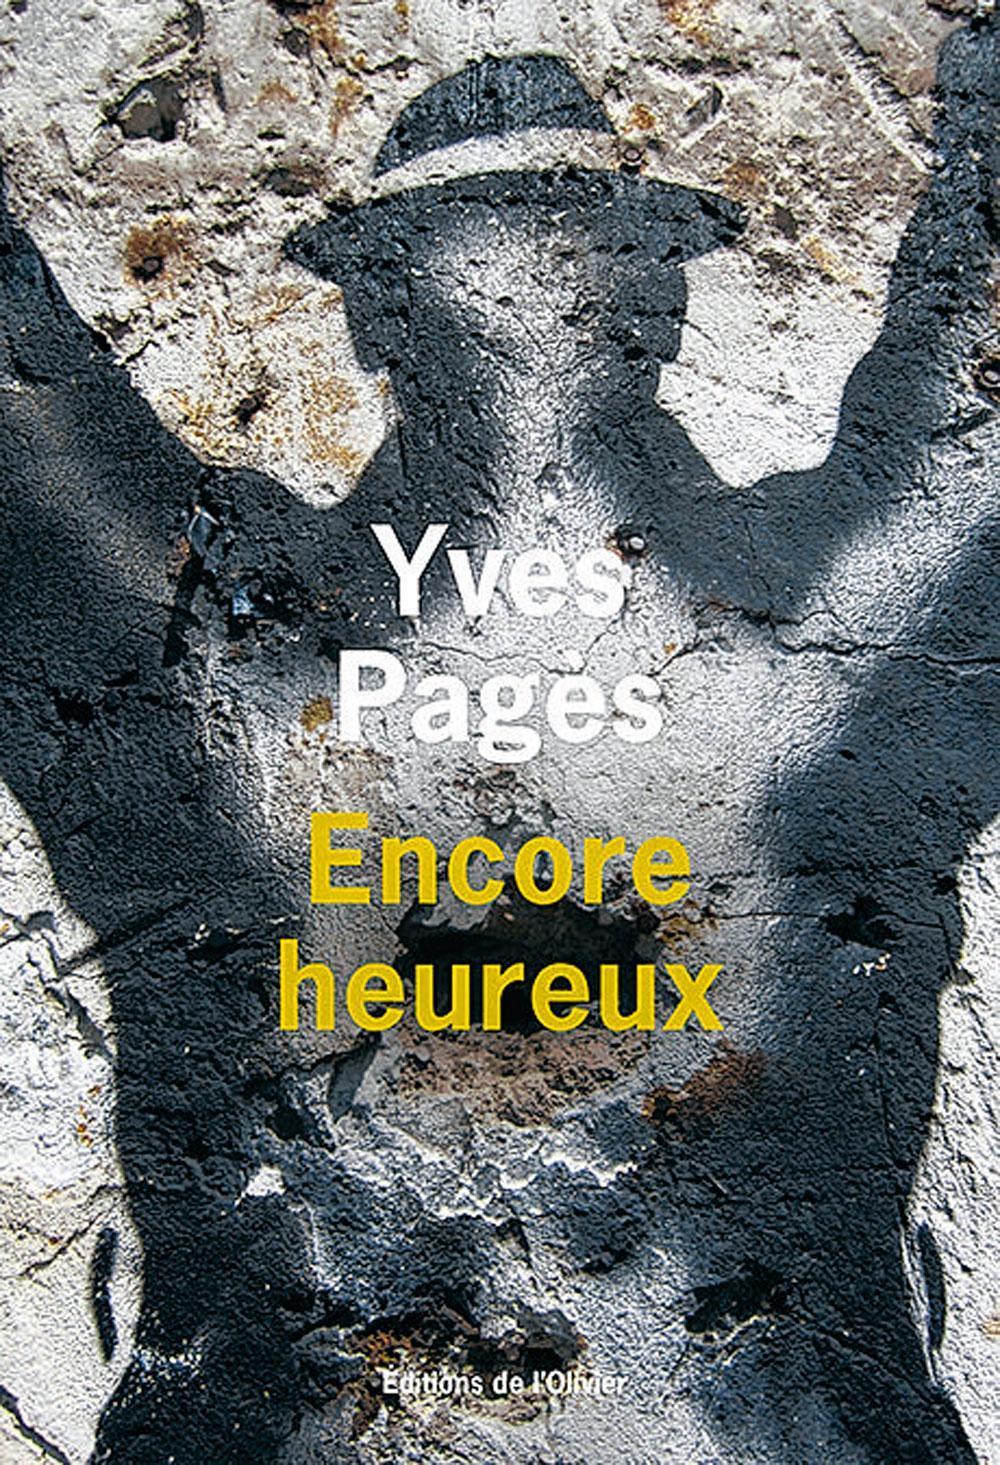 Encore heureux, par Yves Pagès, éd. de l'Olivier, 320 p.